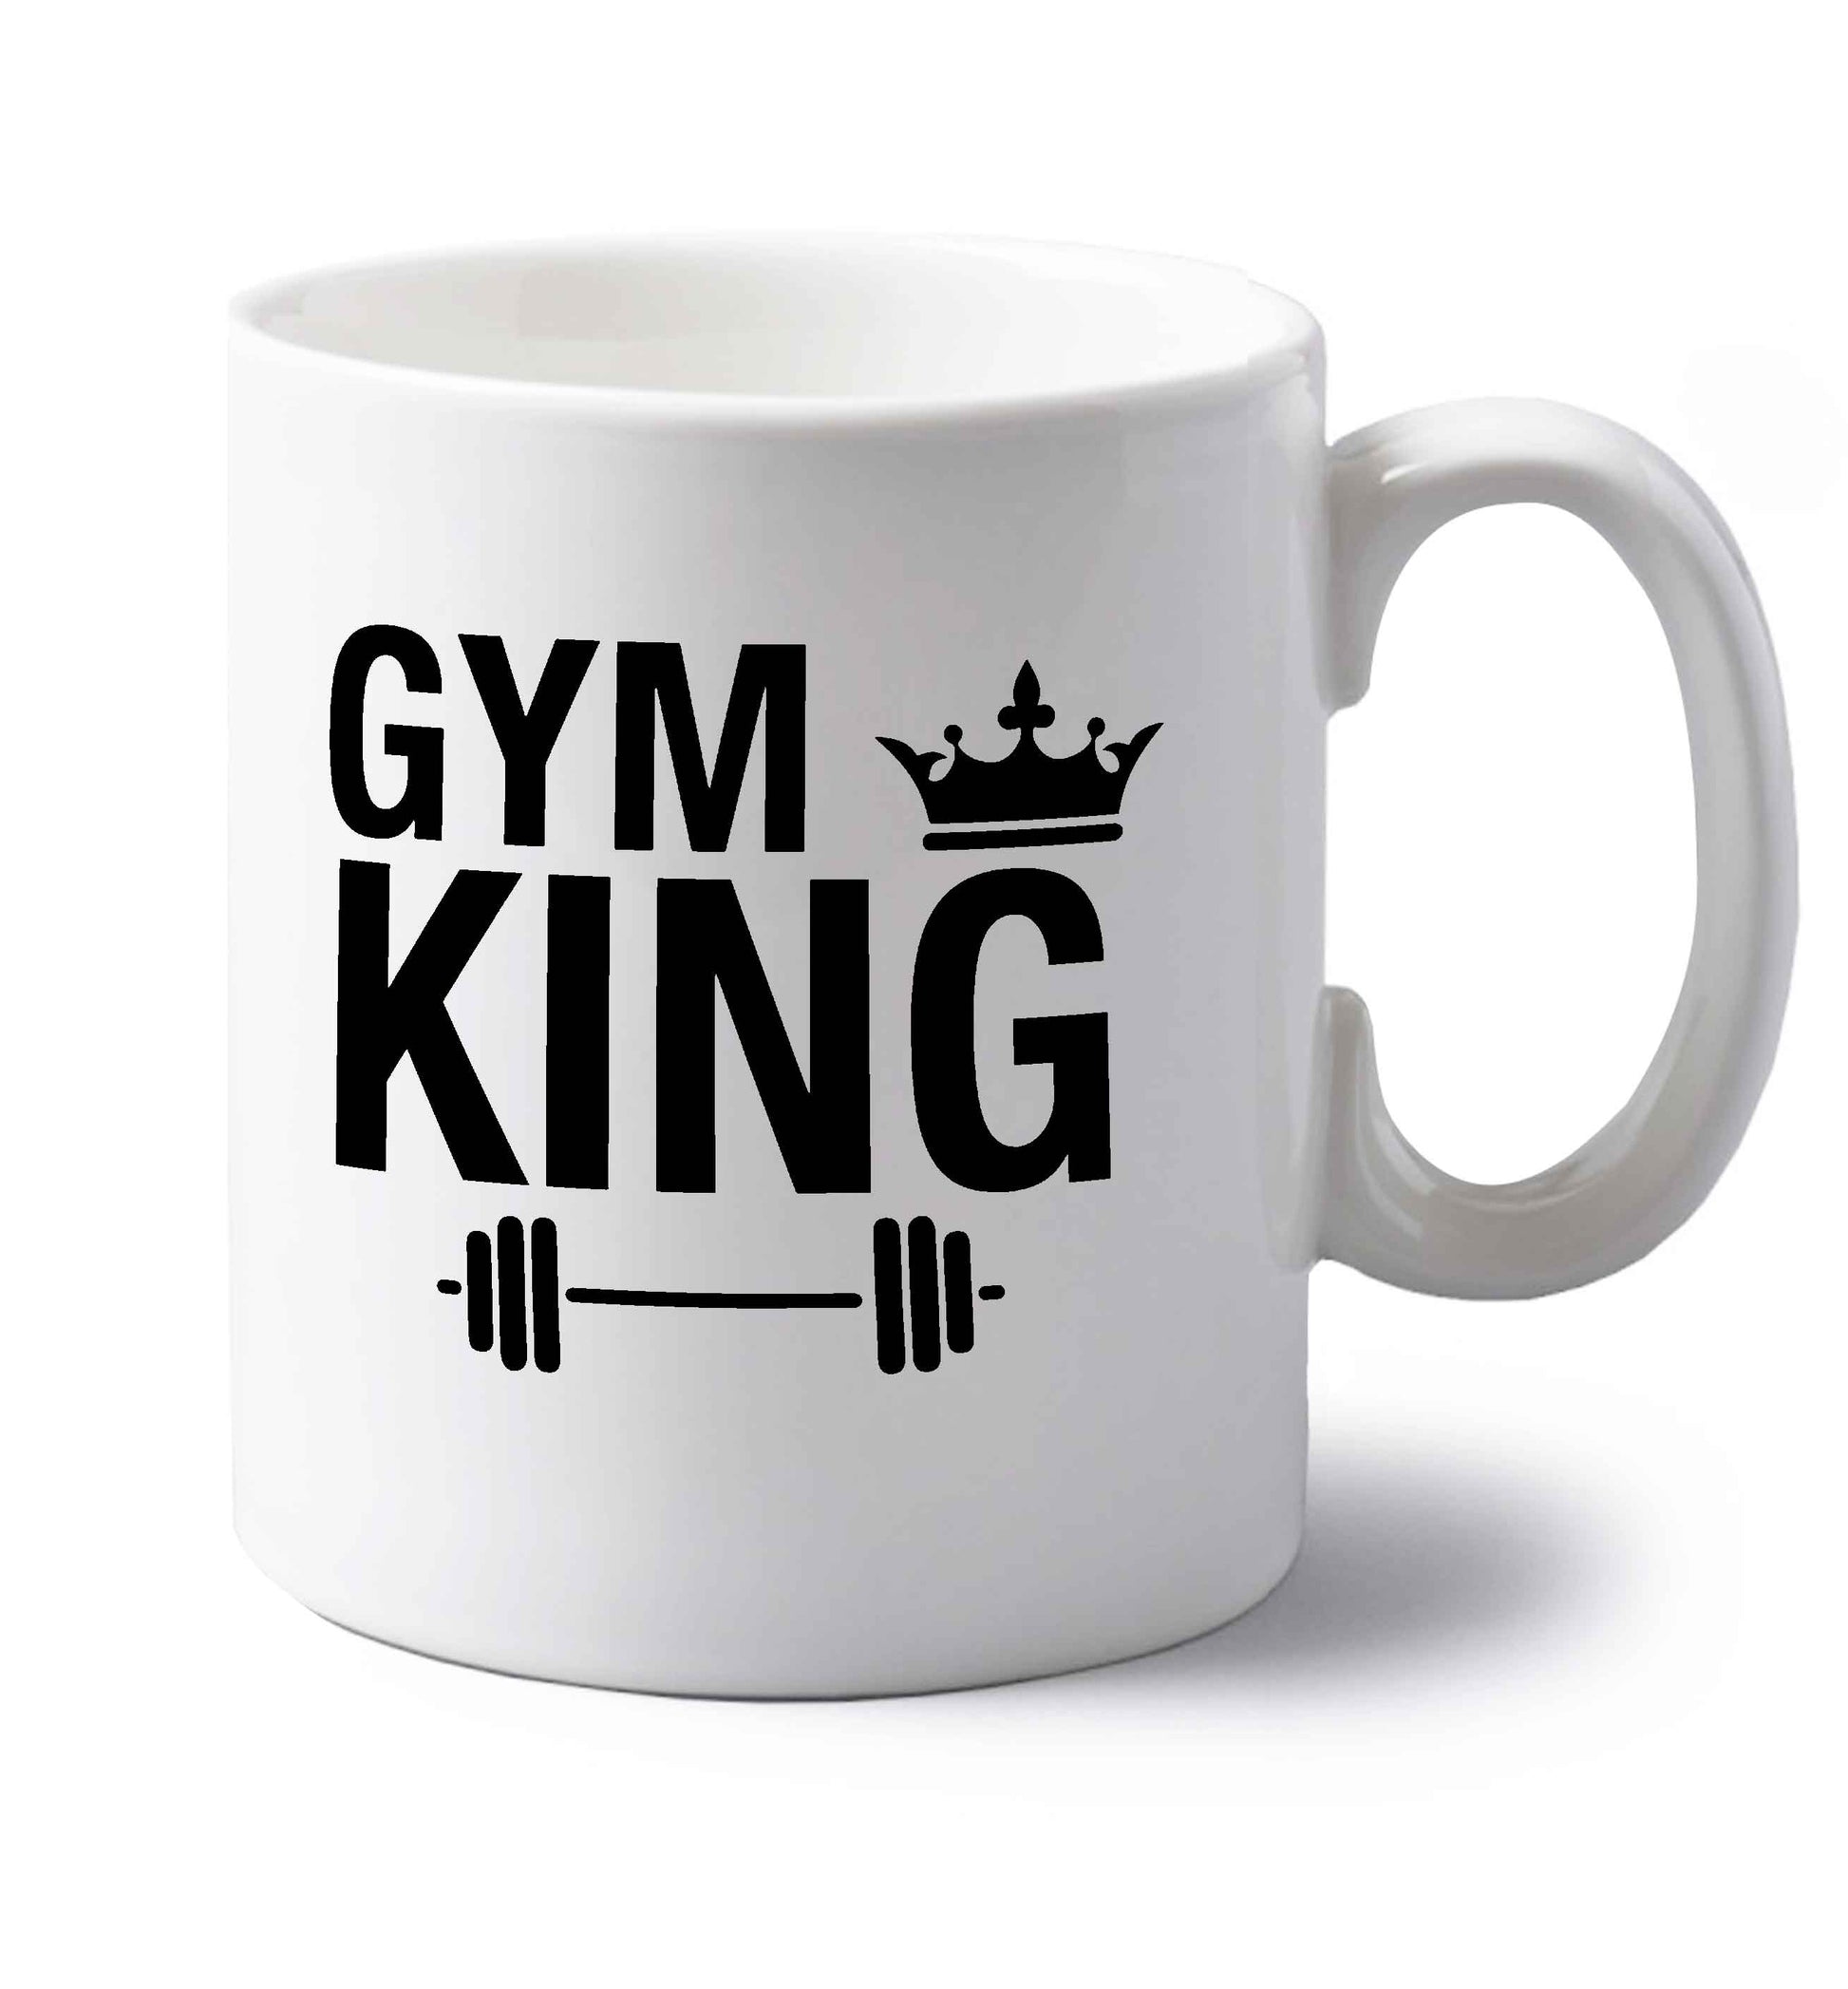 Gym king left handed white ceramic mug 